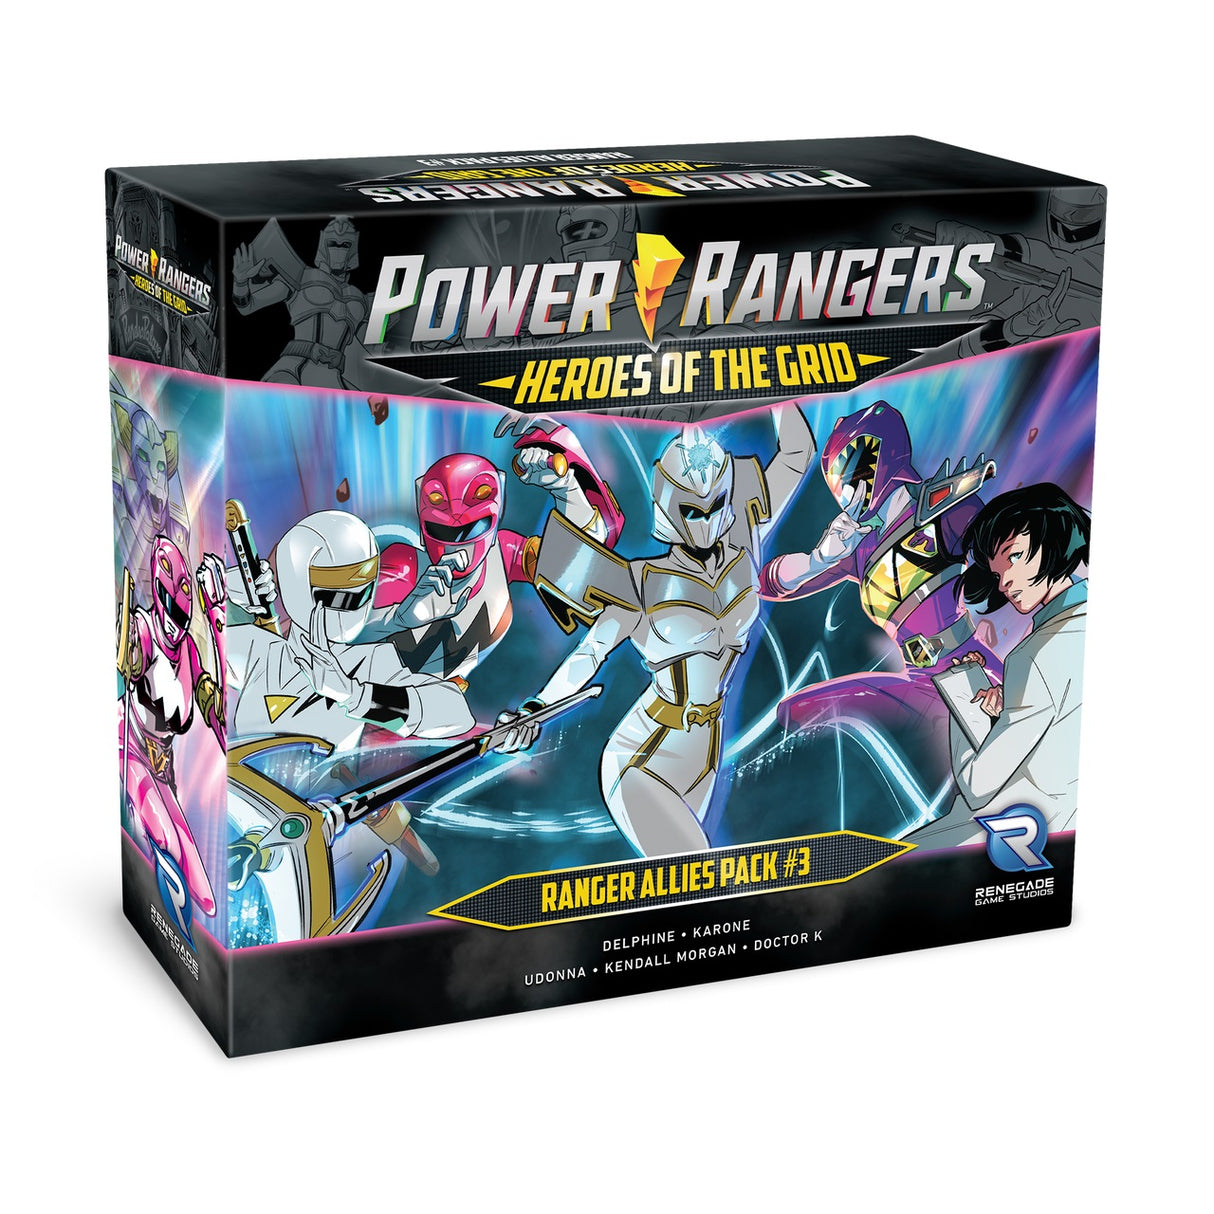 Power Rangers Heroes of the Grid - Ranger Allies Pack #3